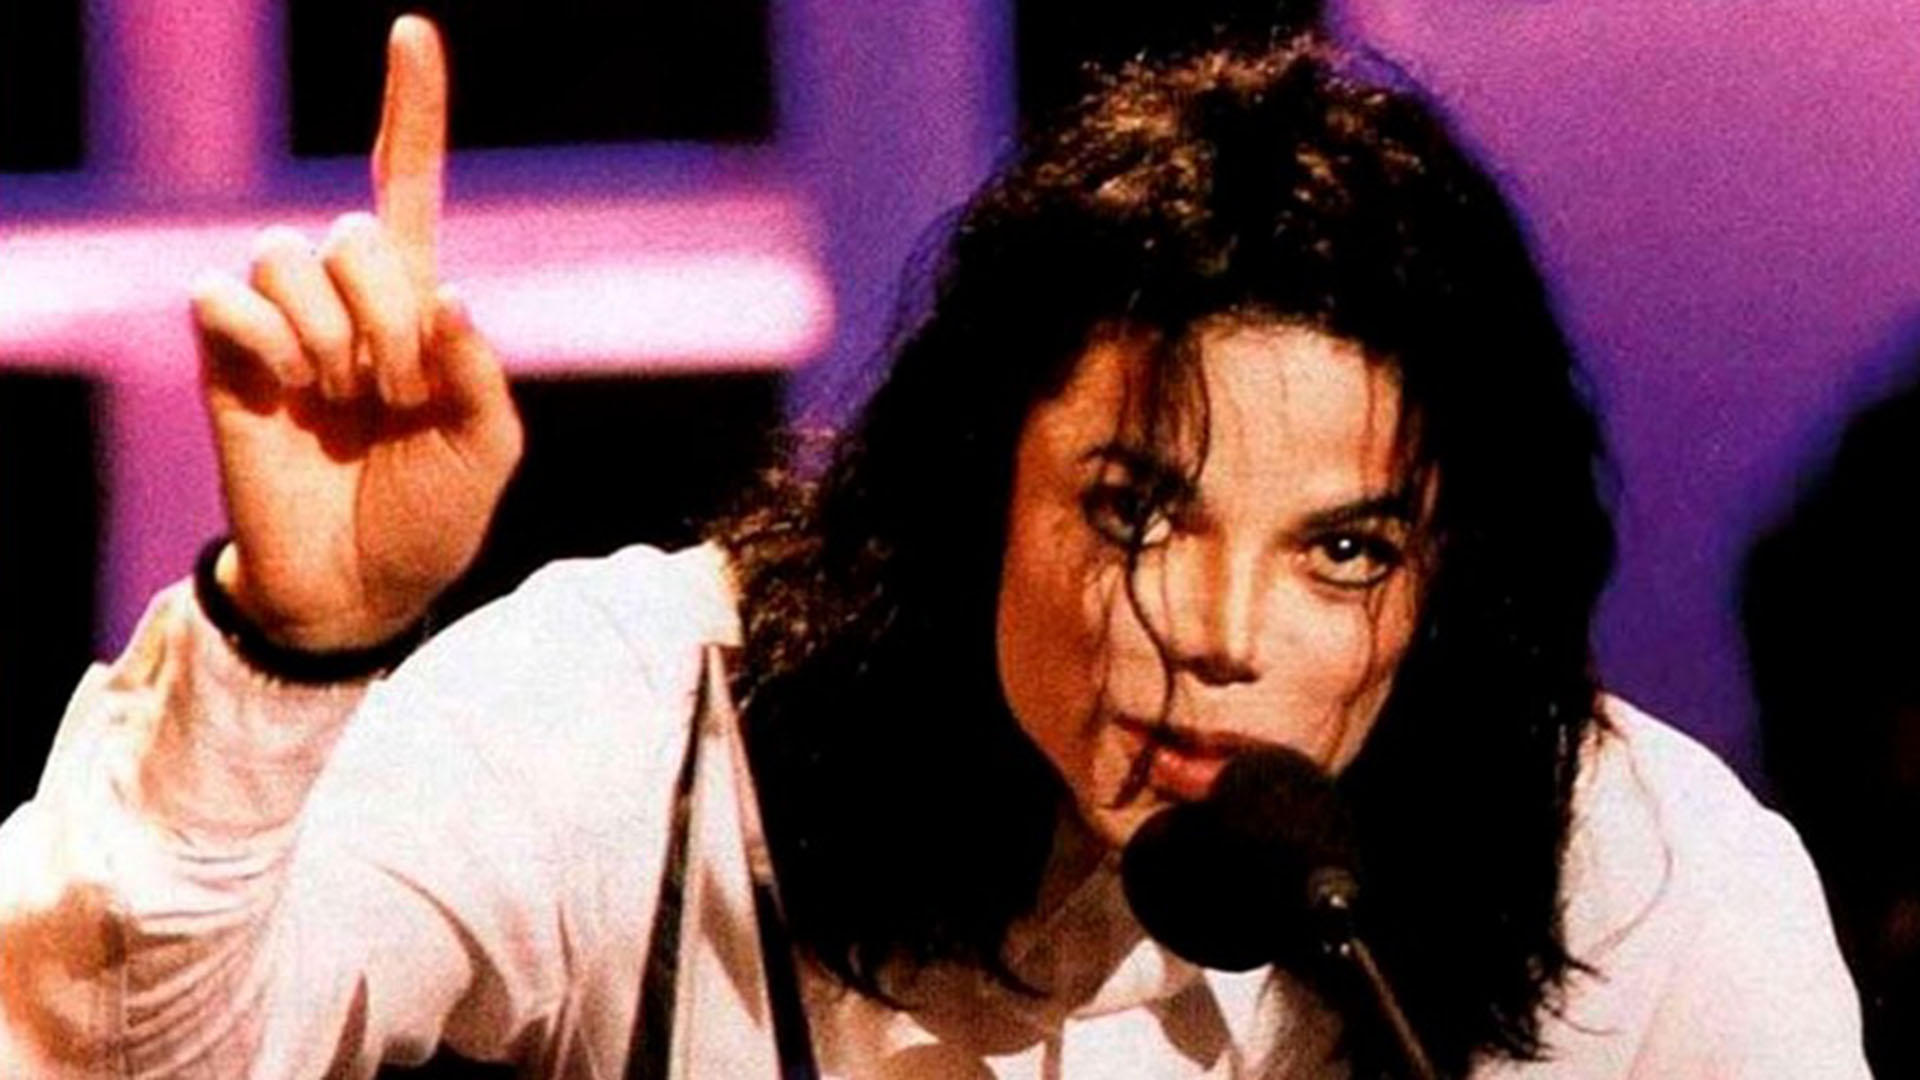 Michael Jackson afronó varias denuncias sobre pedofilia a lo largo de su vida